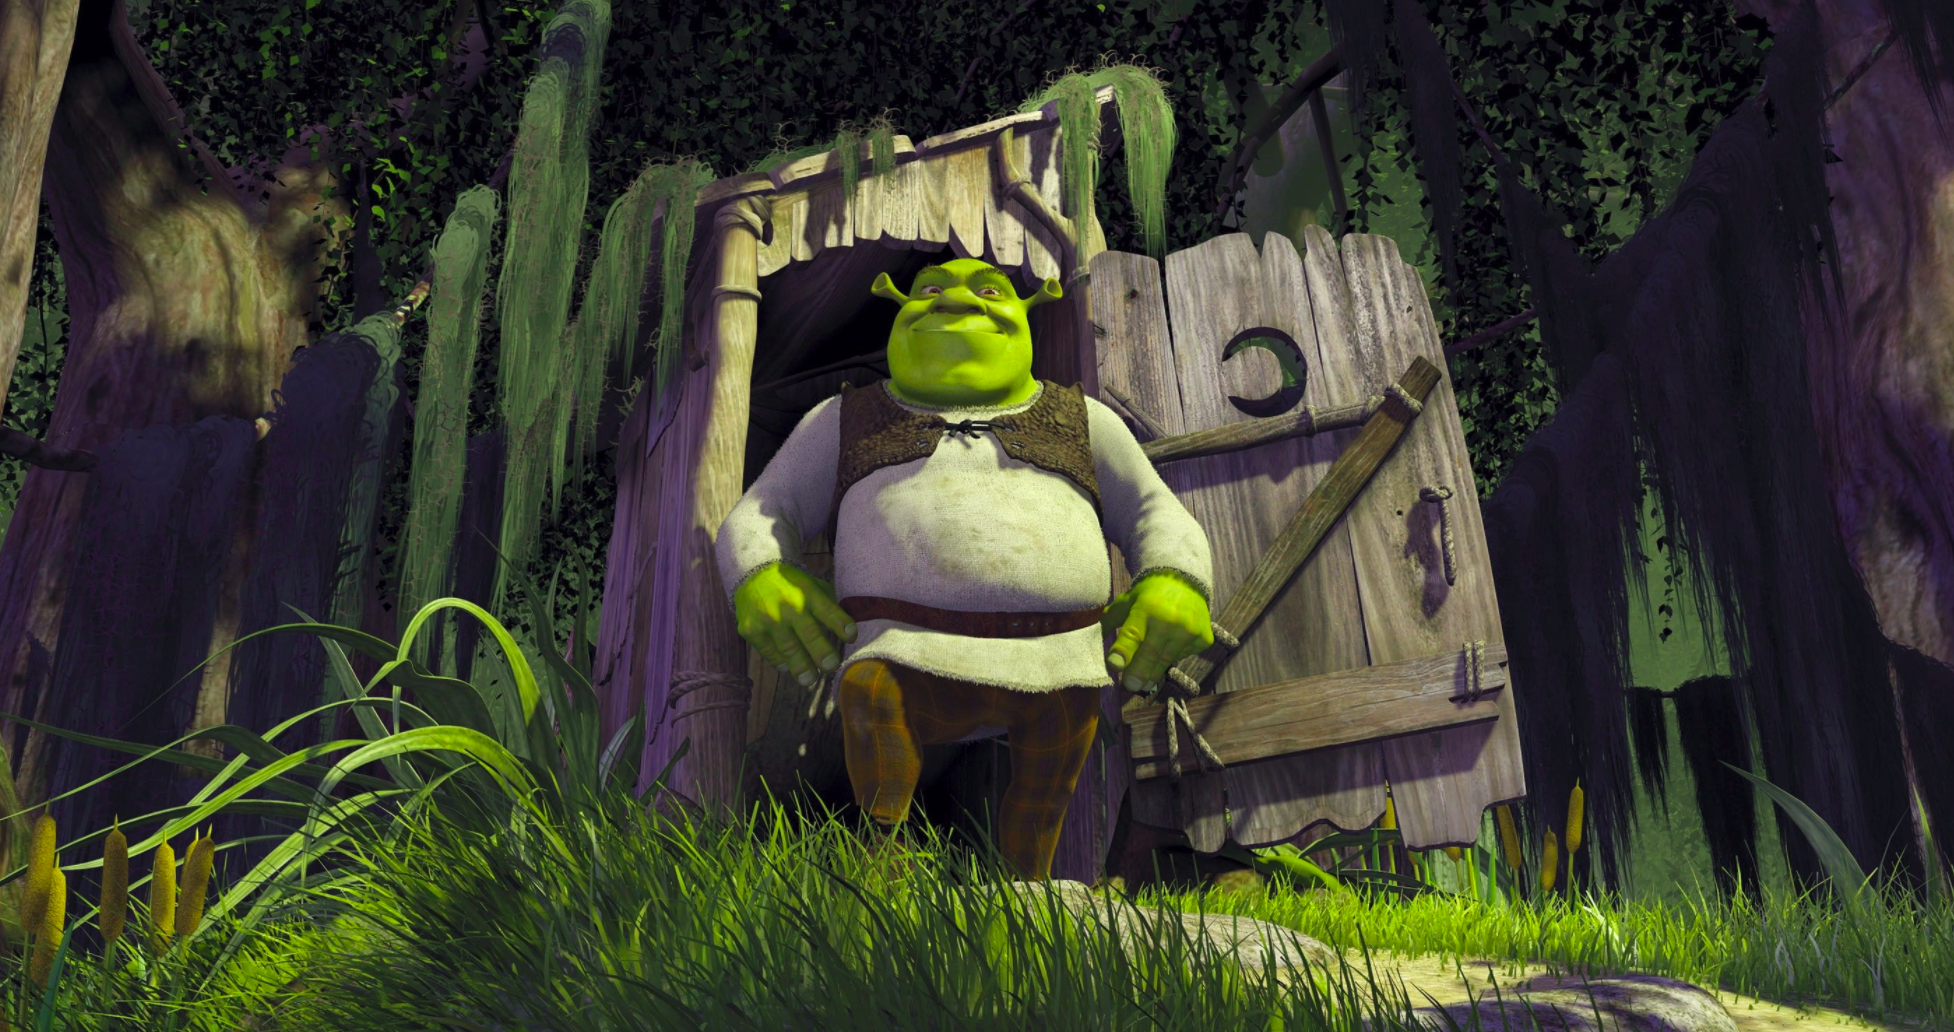 Memes Aside, Shrek Deserves Its National Film Registry Spot